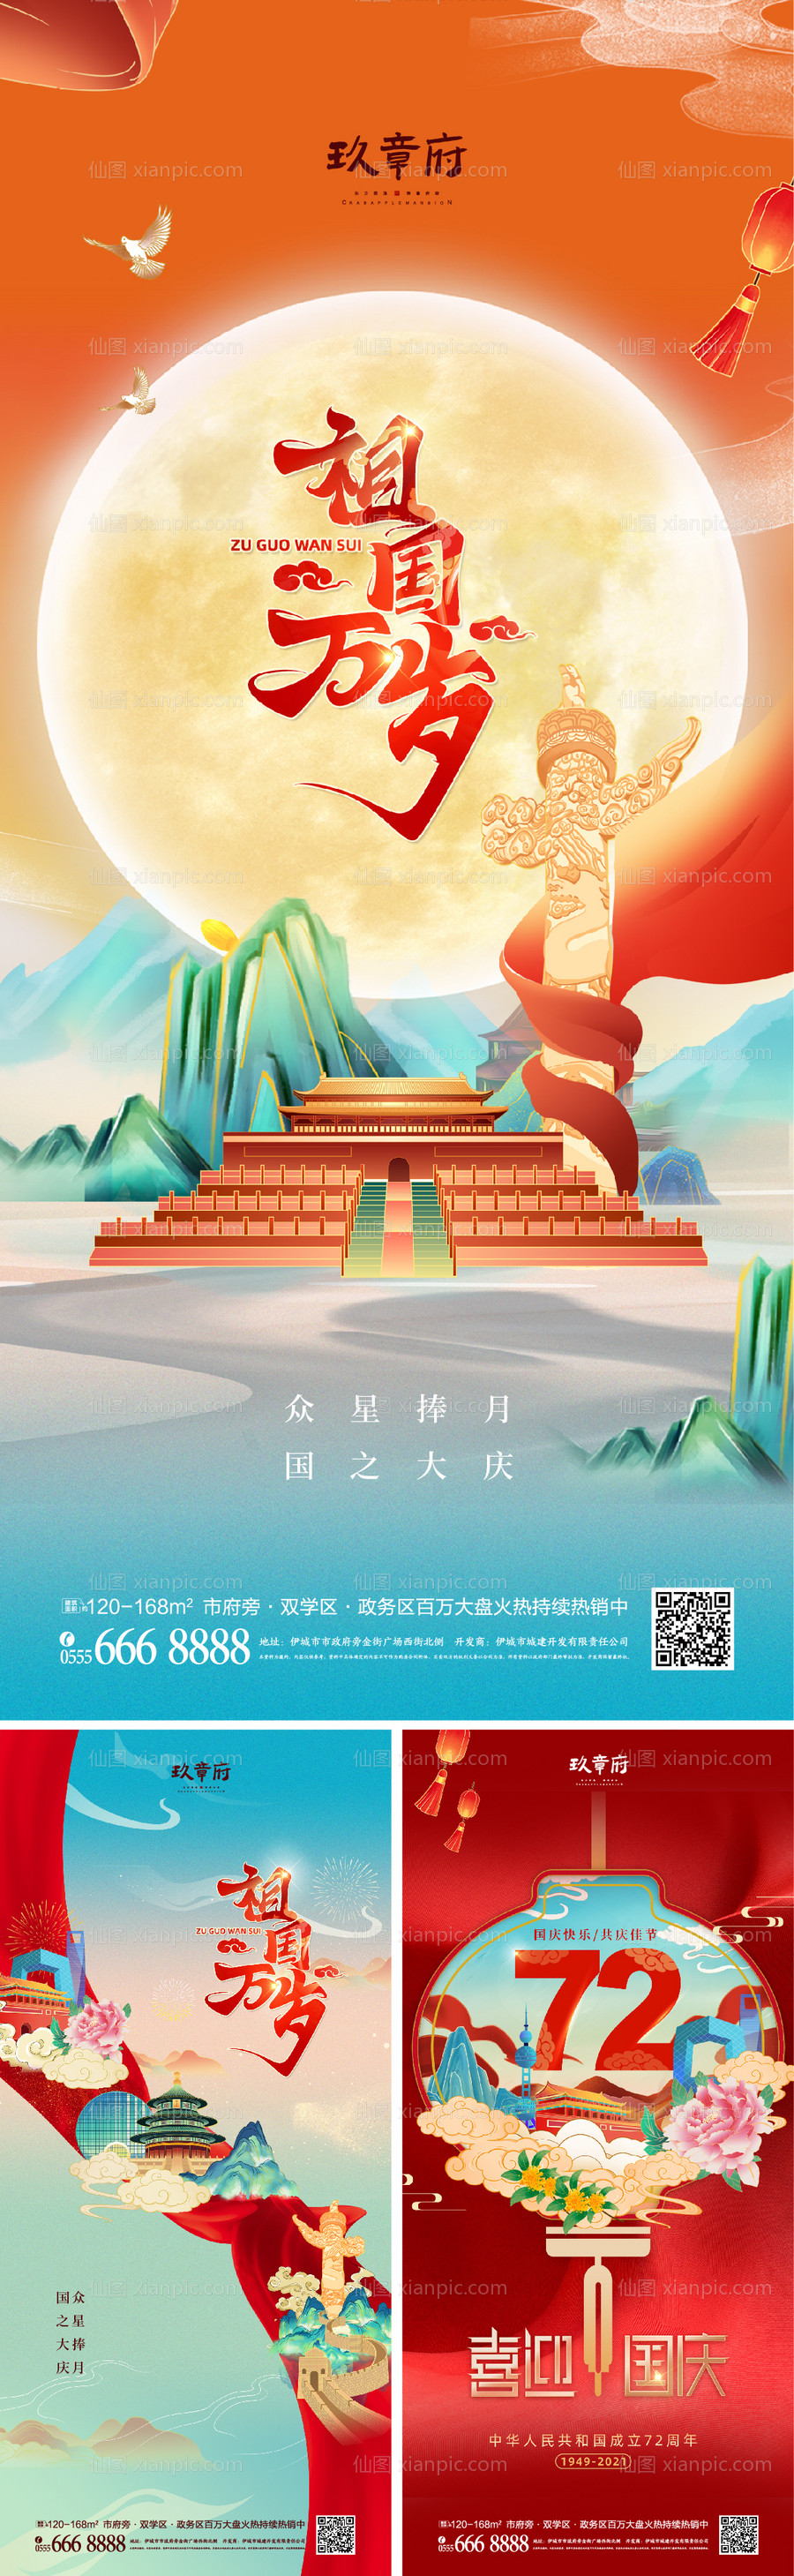 素材乐-国庆国潮插画手绘系列海报